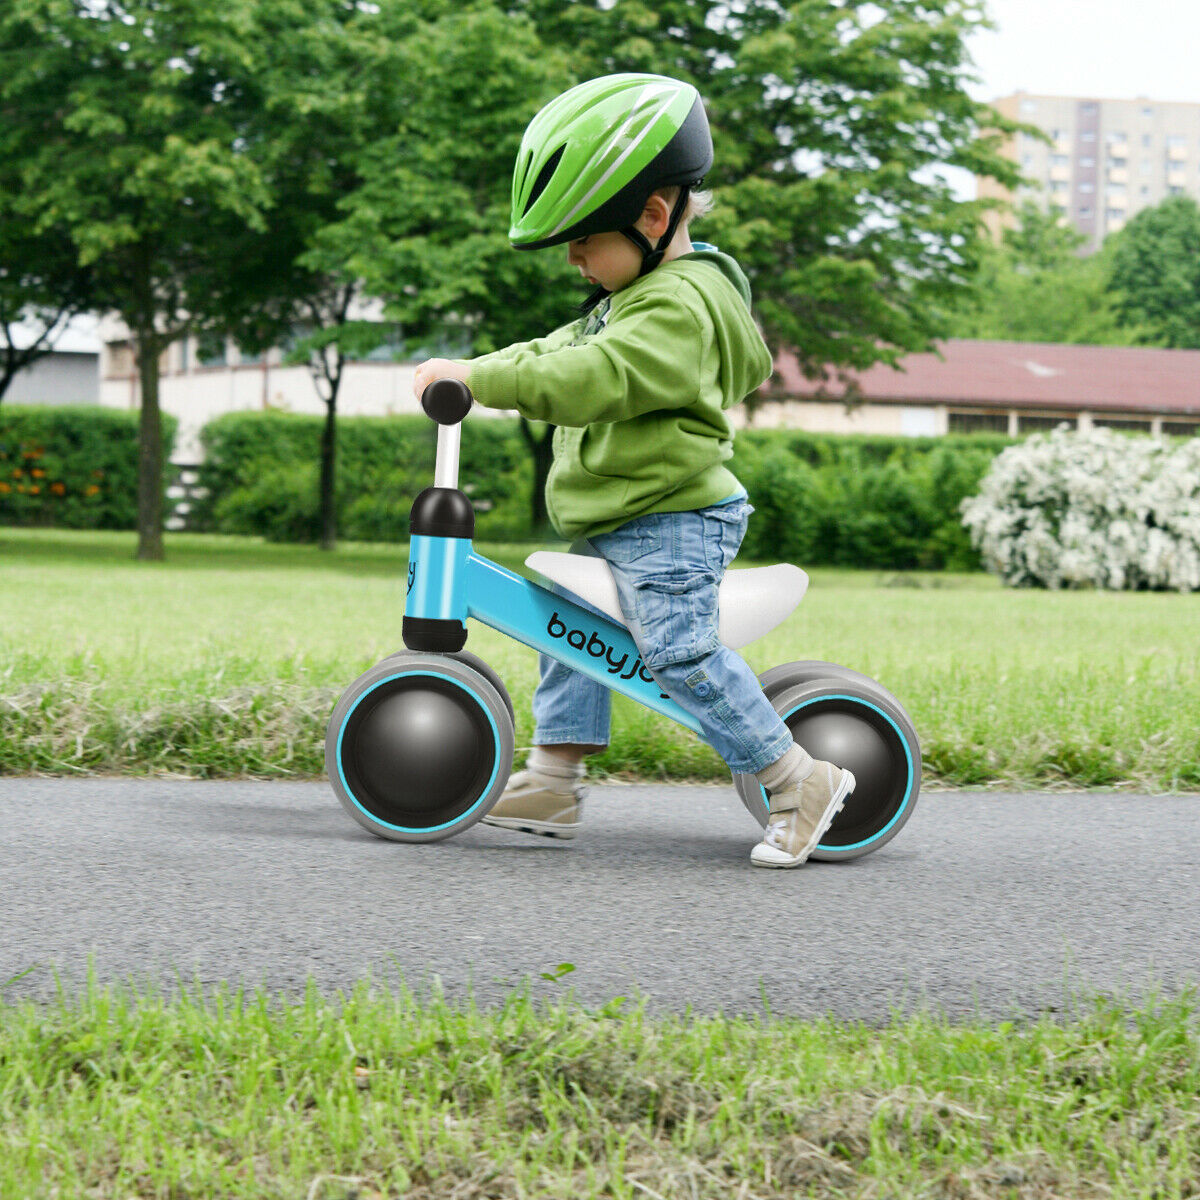 Babyjoy 4 Wheels Baby Balance Bike Children Walker No-Pedal Toddler Toys Rides Blue - image 2 of 10